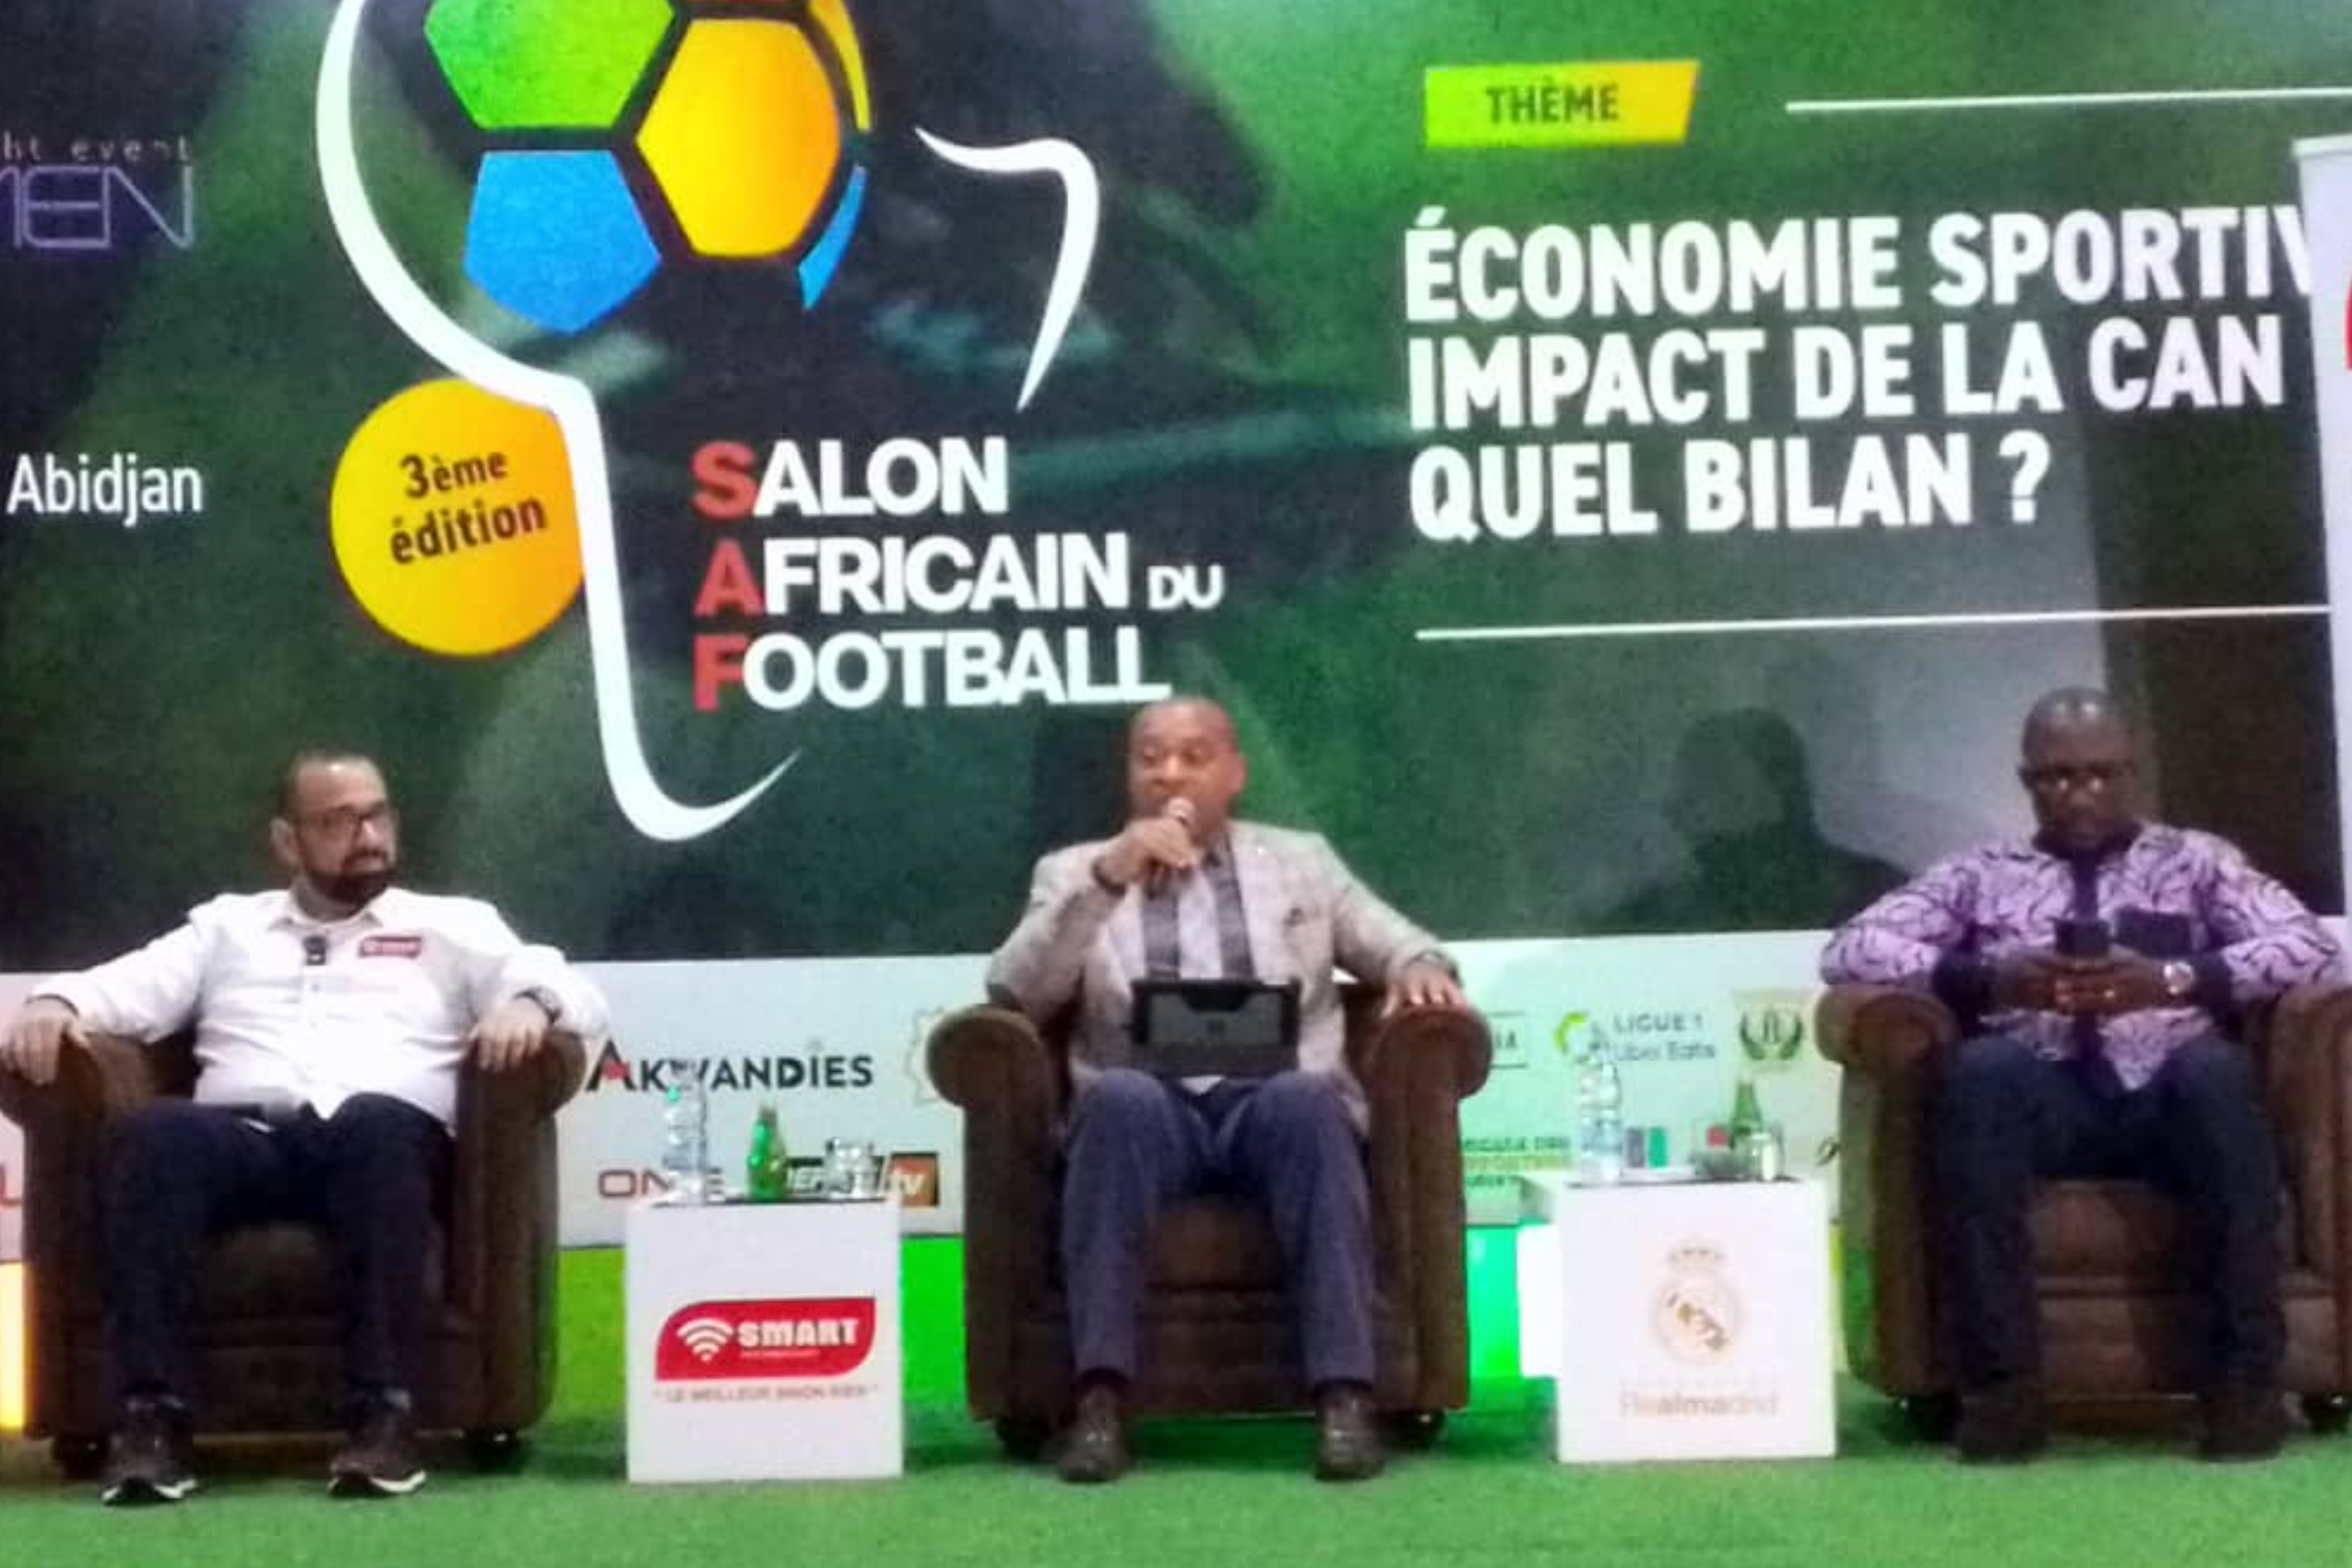 Salon Africain du Football (3è édition) : une antenne du Real de Madrid bientôt implantée à Abidjan 